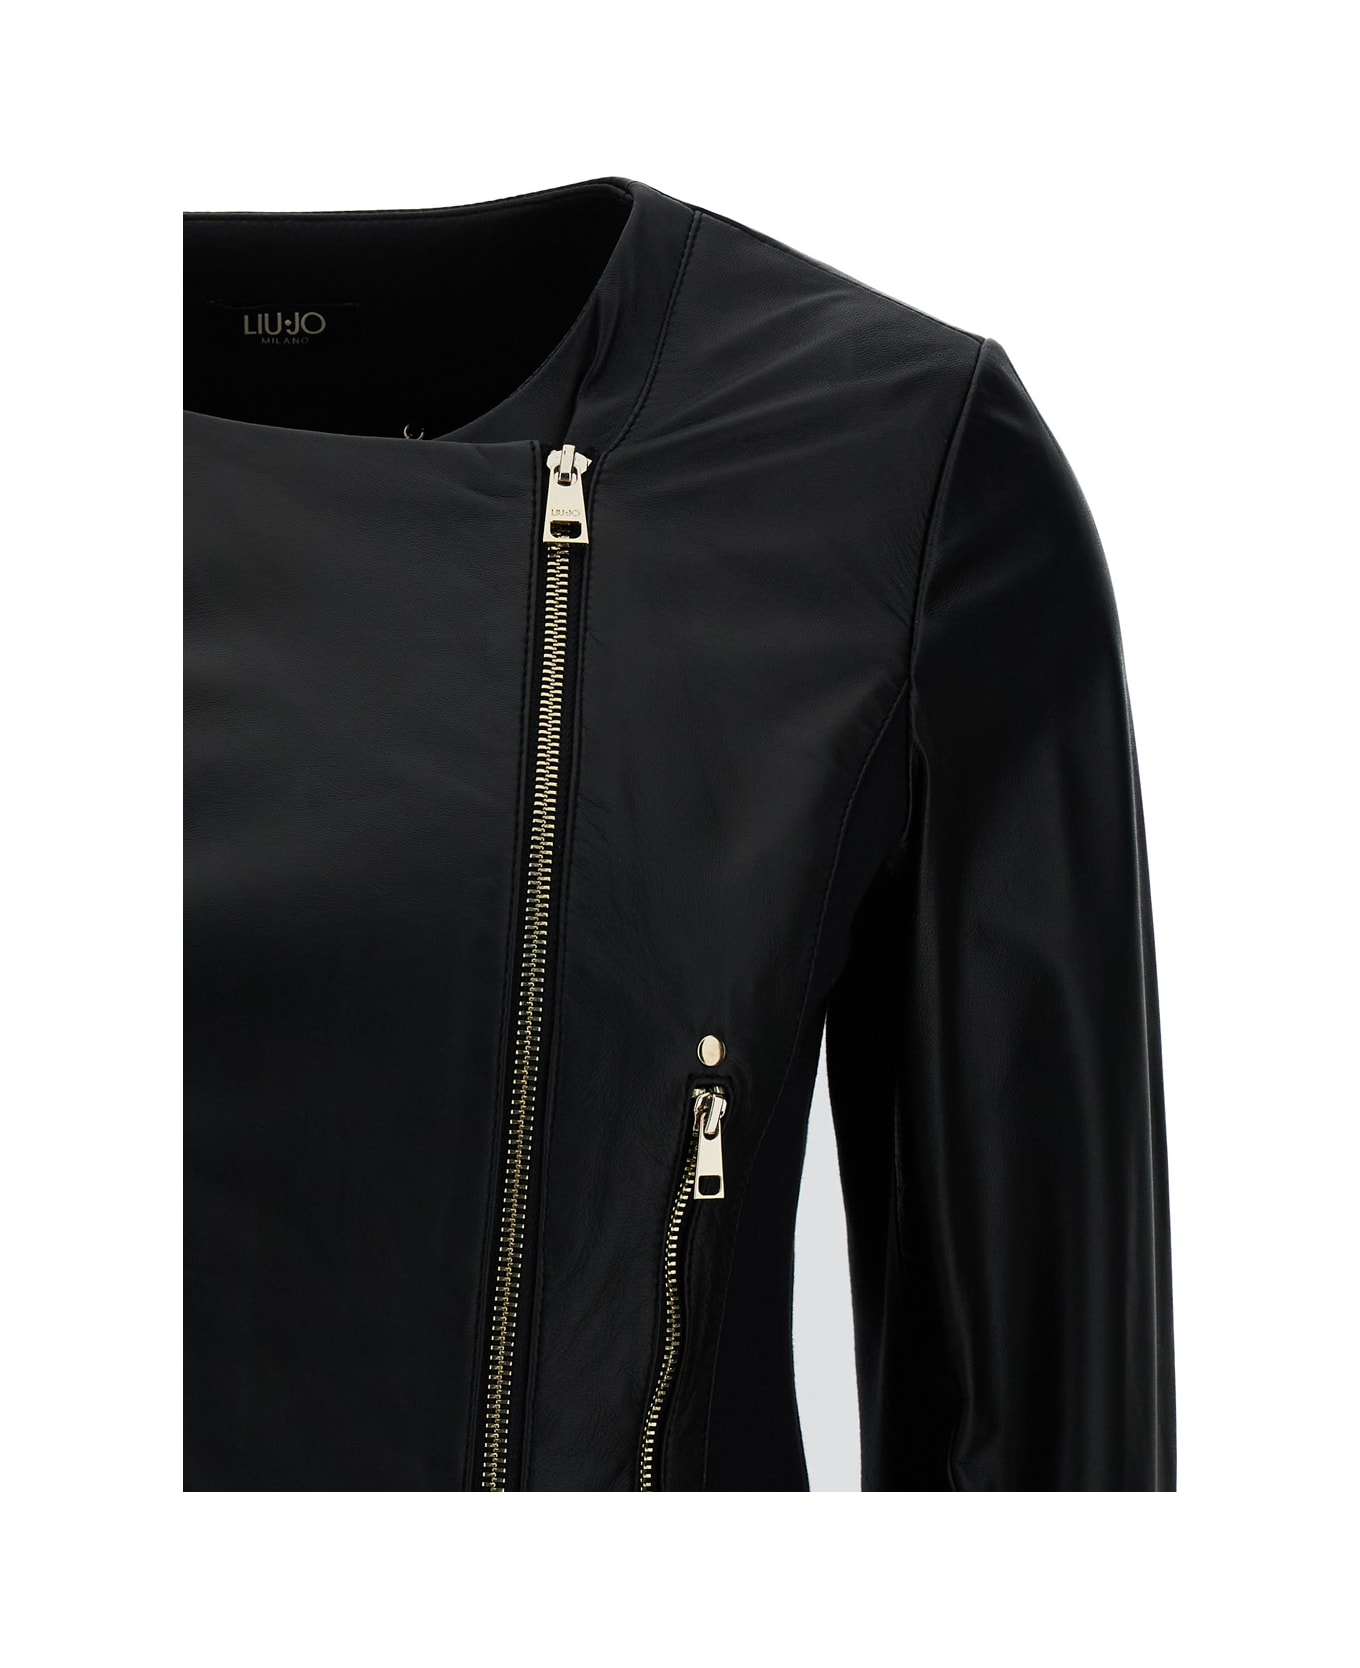 Liu-Jo Black Round Neck Biker Jacket In Leather Woman - Black